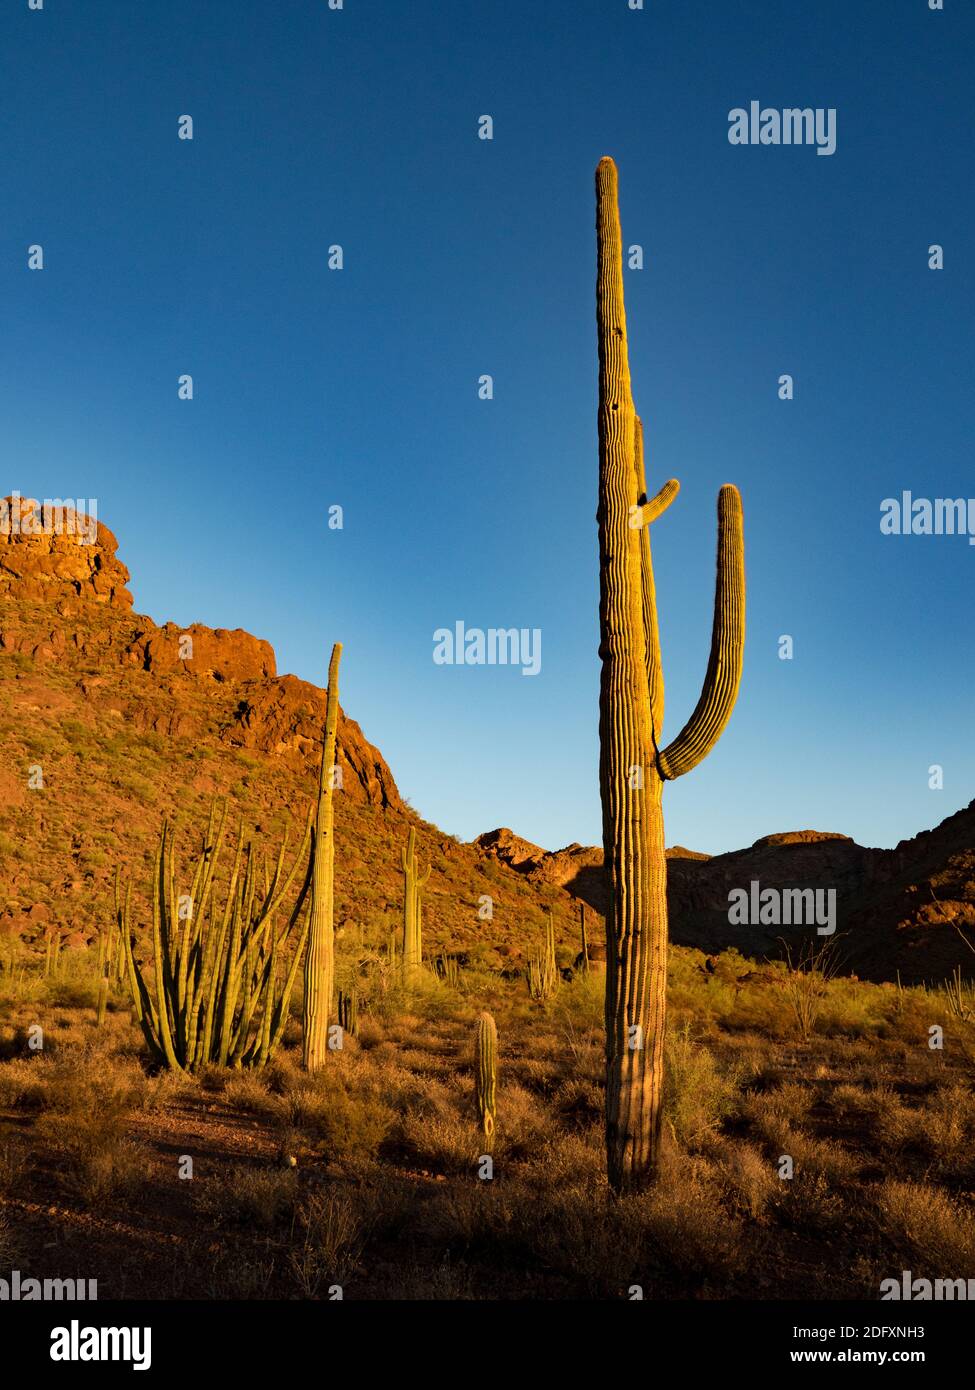 Le magnifique désert du terrain de camping Alamo Canyon dans le monument national Organ Pipe Cactus, Arizona, États-Unis Banque D'Images